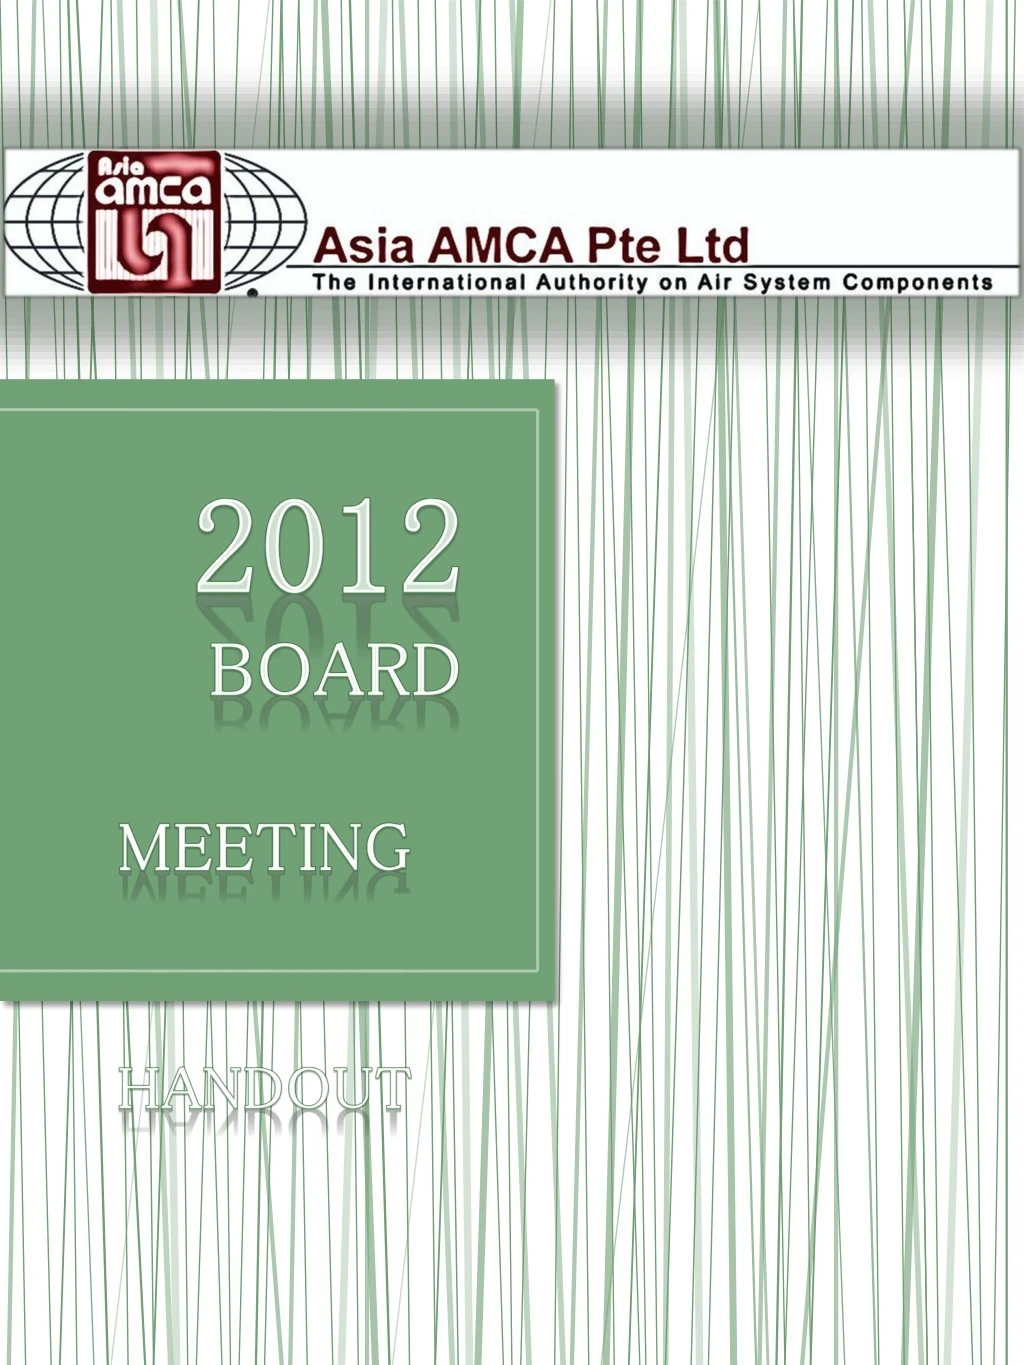 2012 board meeting handout